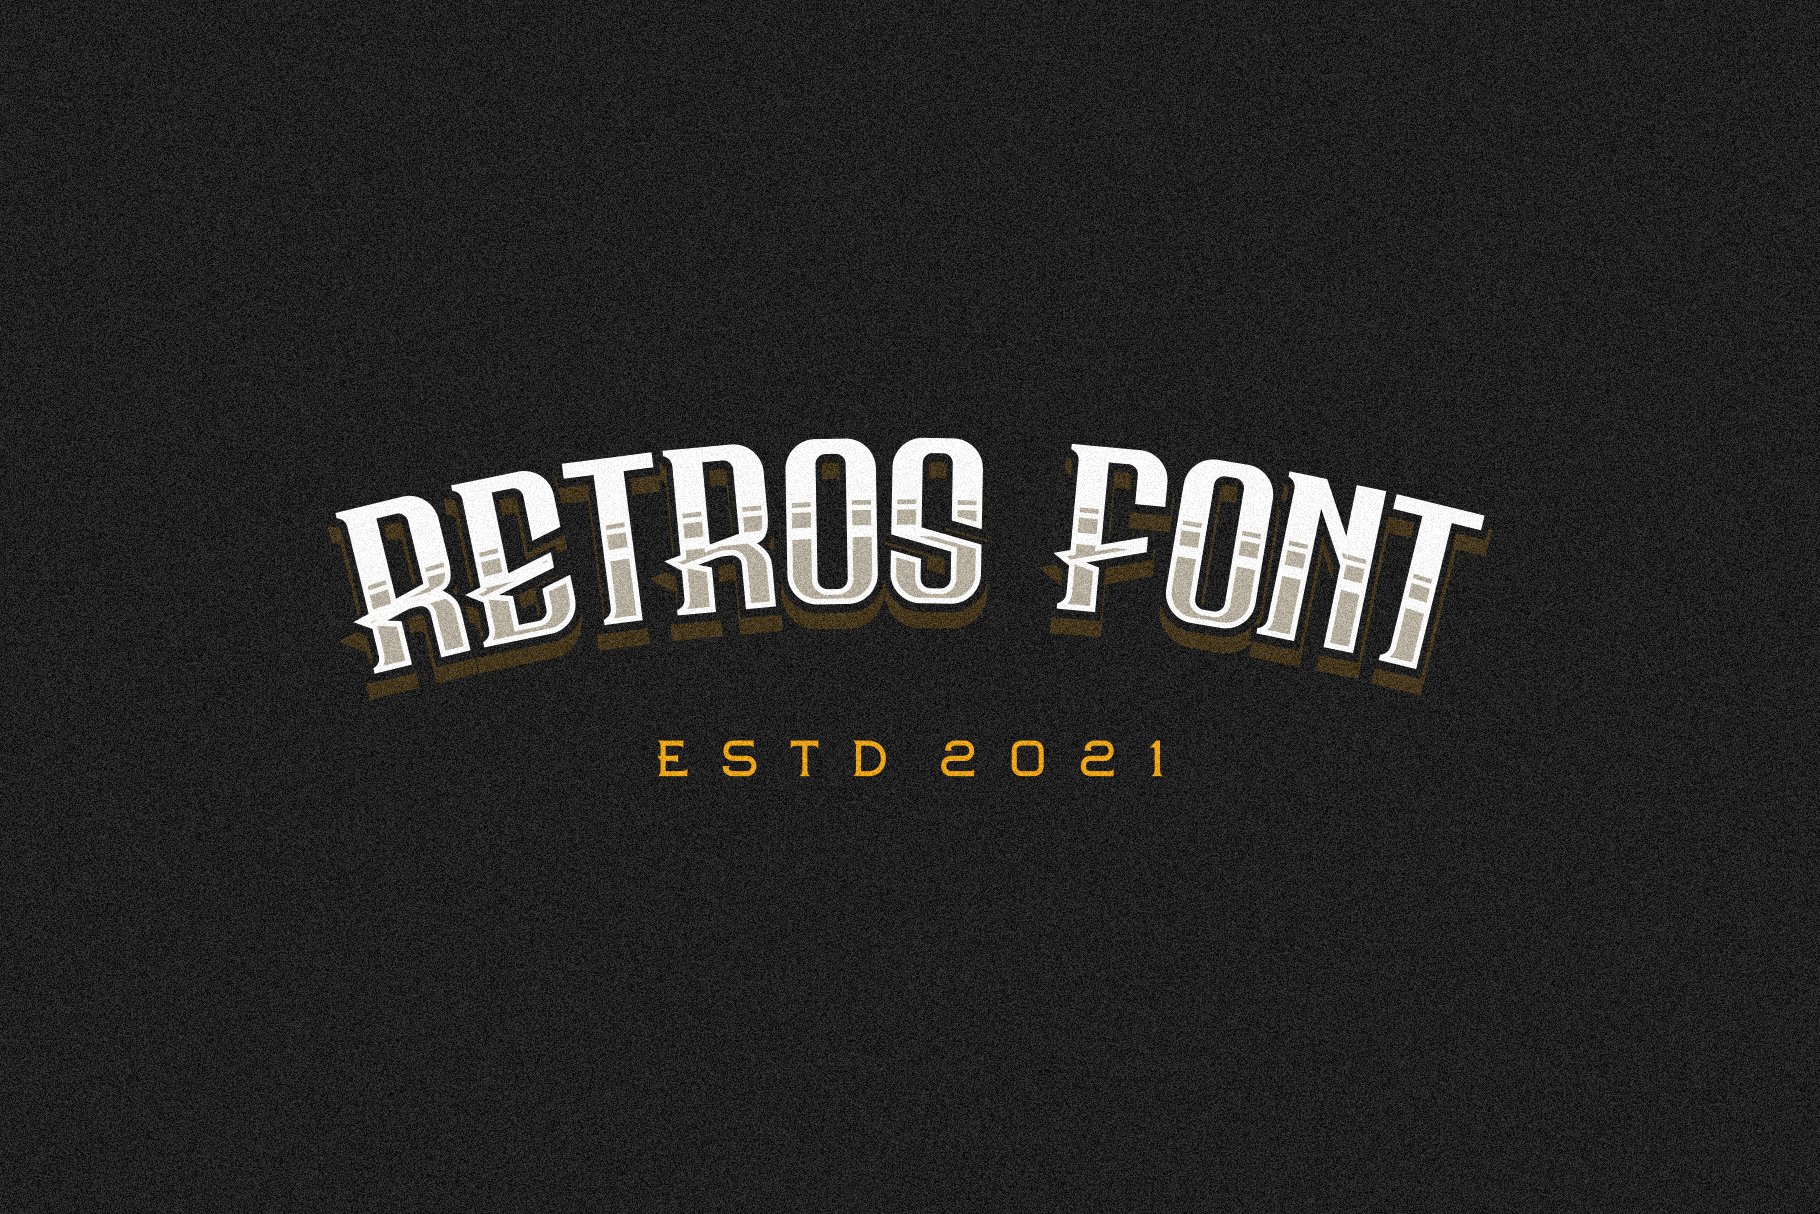 Bersepeda Font Vintage Modern preview image.